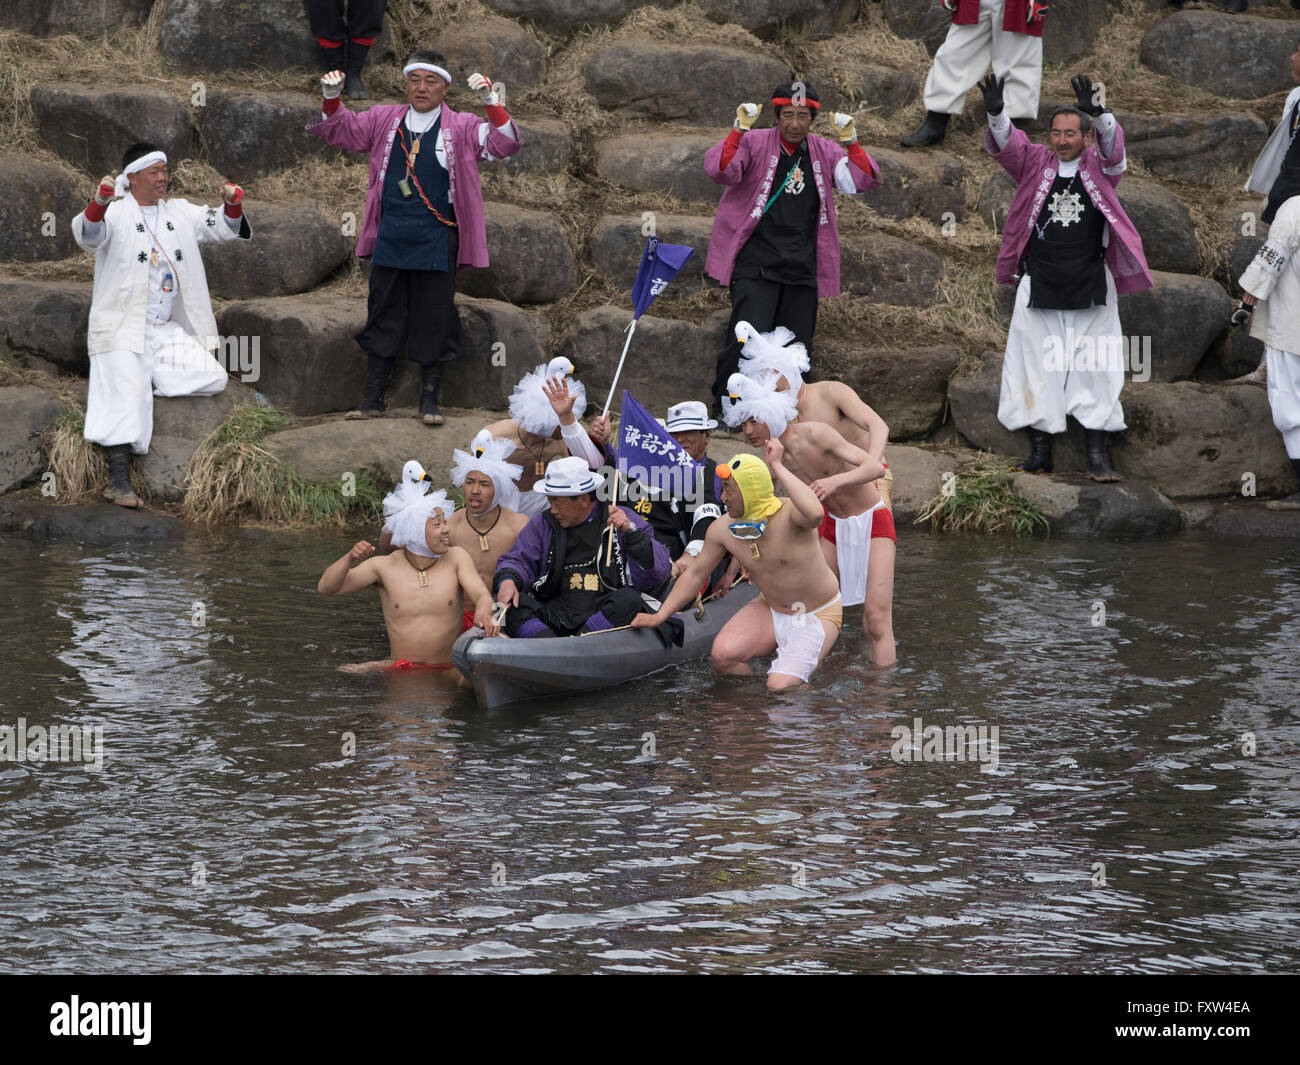 Onbashira - Suwa Taisha Kamisha Kawagoshi Männer escort ein Würdenträger über den Fluss. Shinto-Festival der Erneuerung in Nagano. Stockfoto